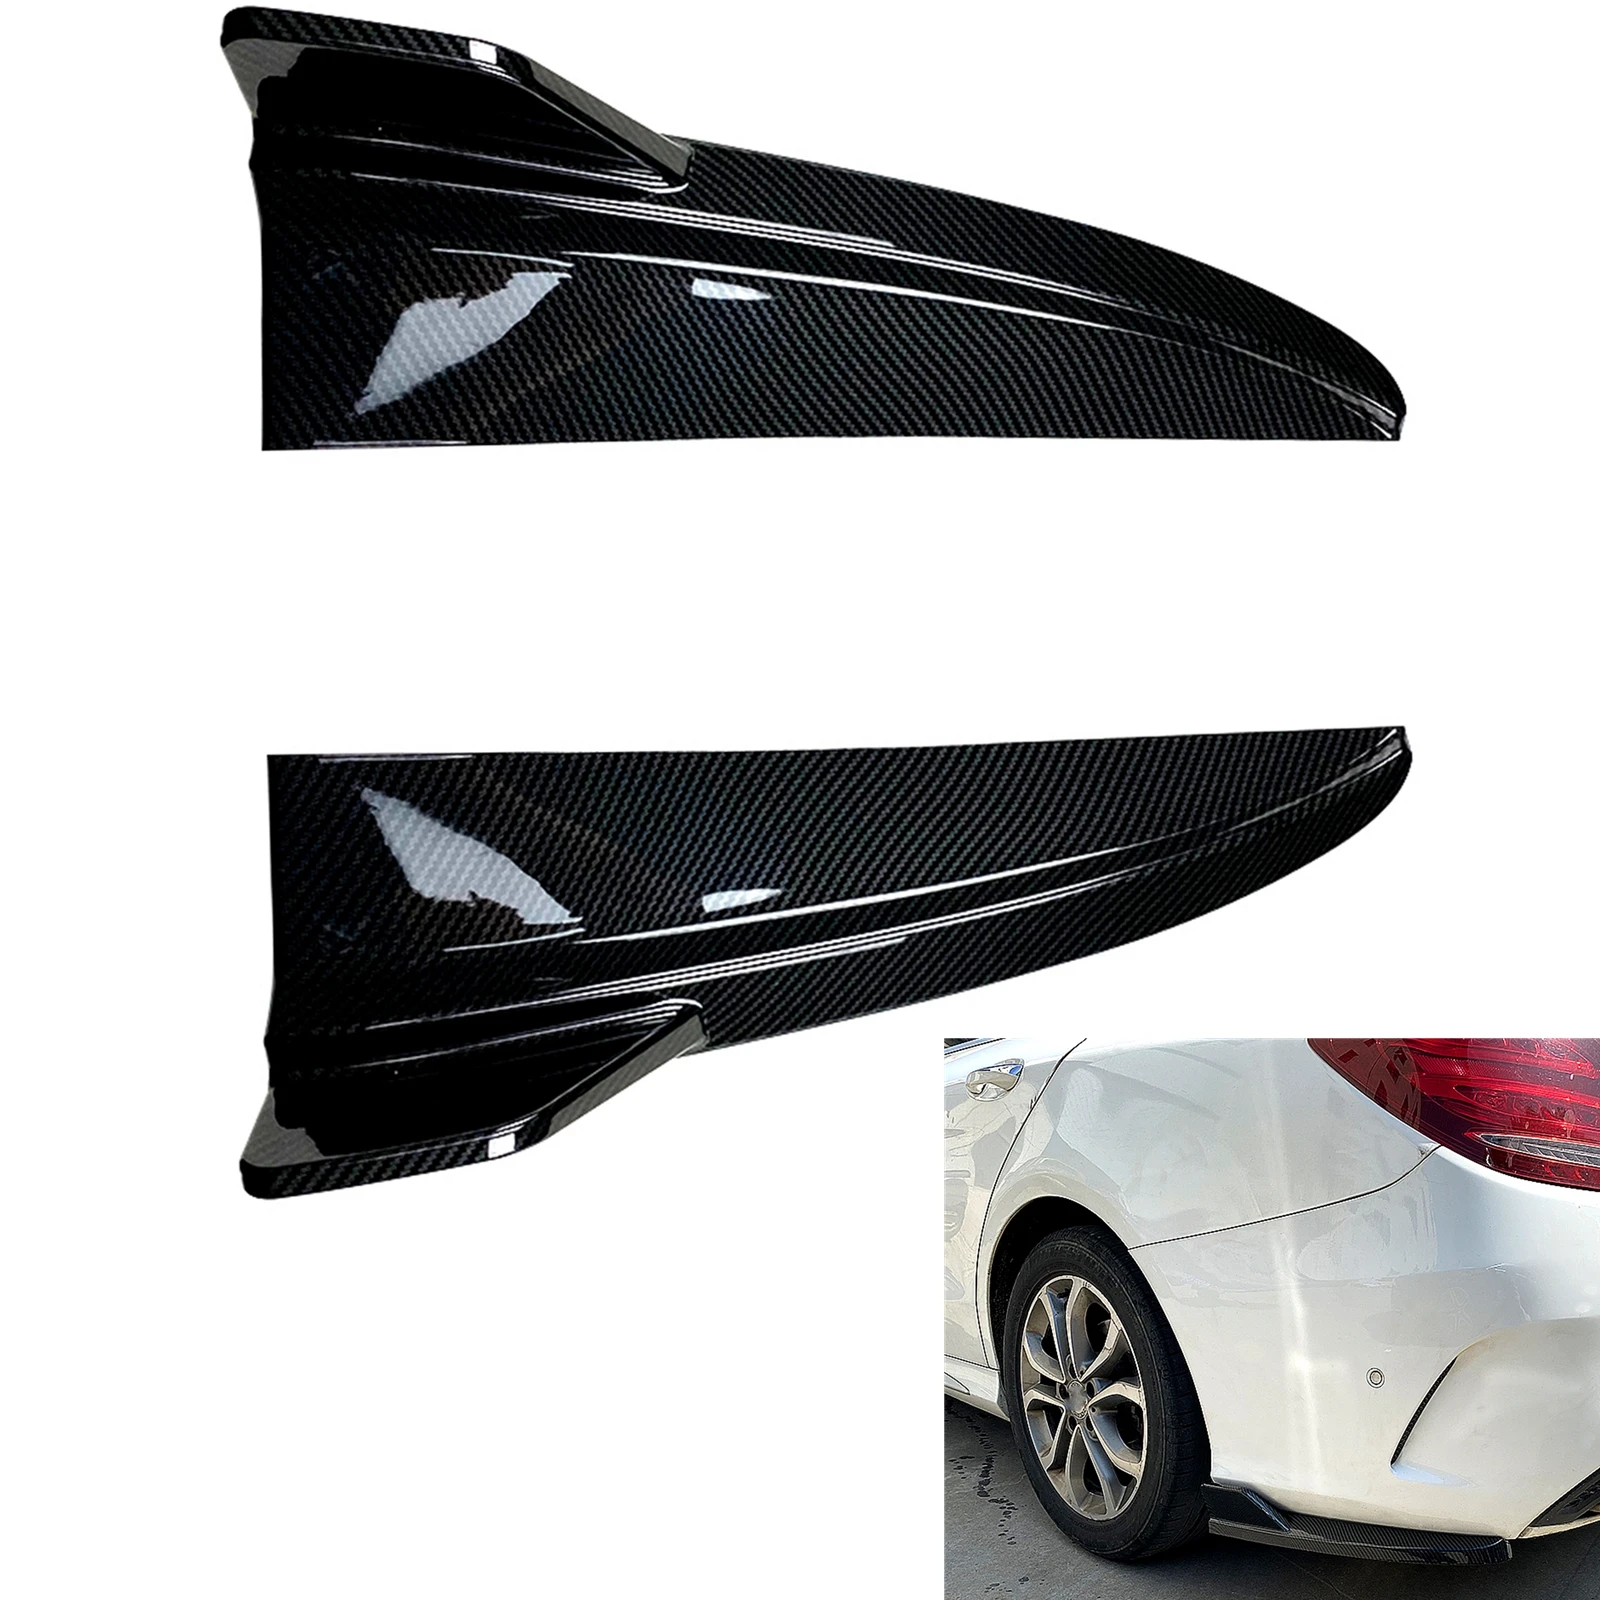 

Сплиттер боковой для заднего бампера Mercedes Benz C Class 2015-2021 W205 C180 C200 C260 C43 AMG из углеродного волокна